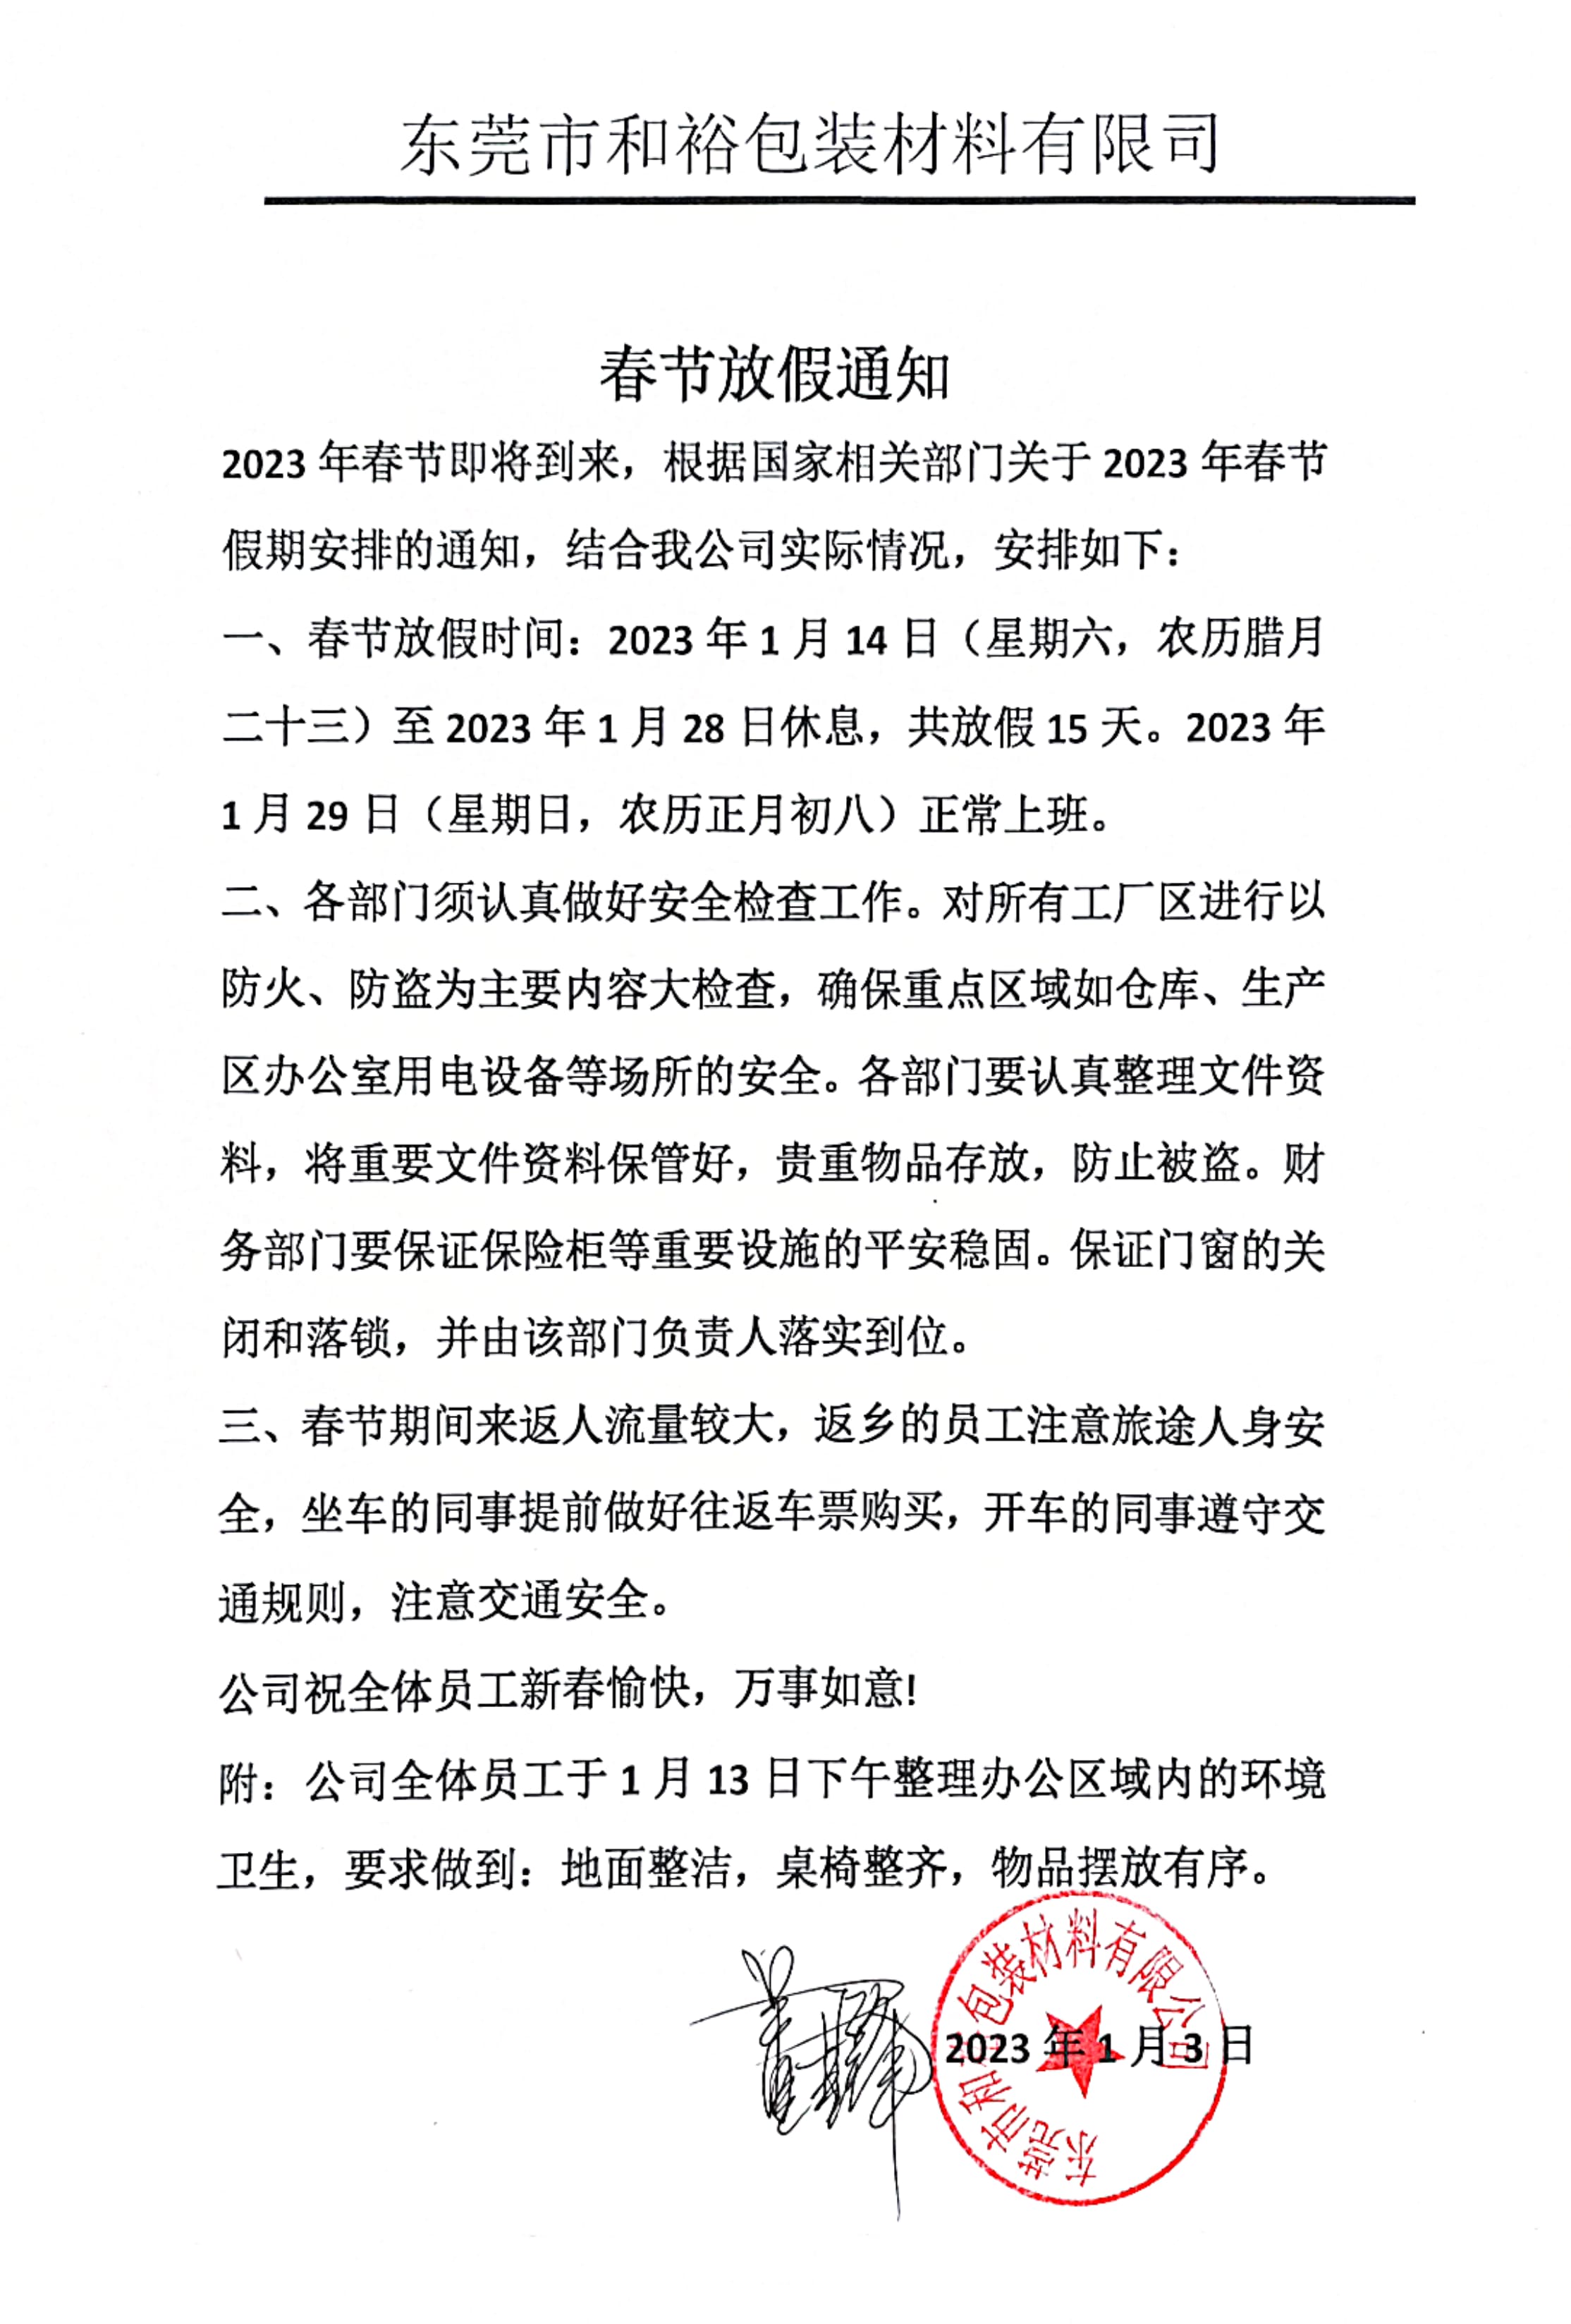 杨浦区2023年和裕包装春节放假通知